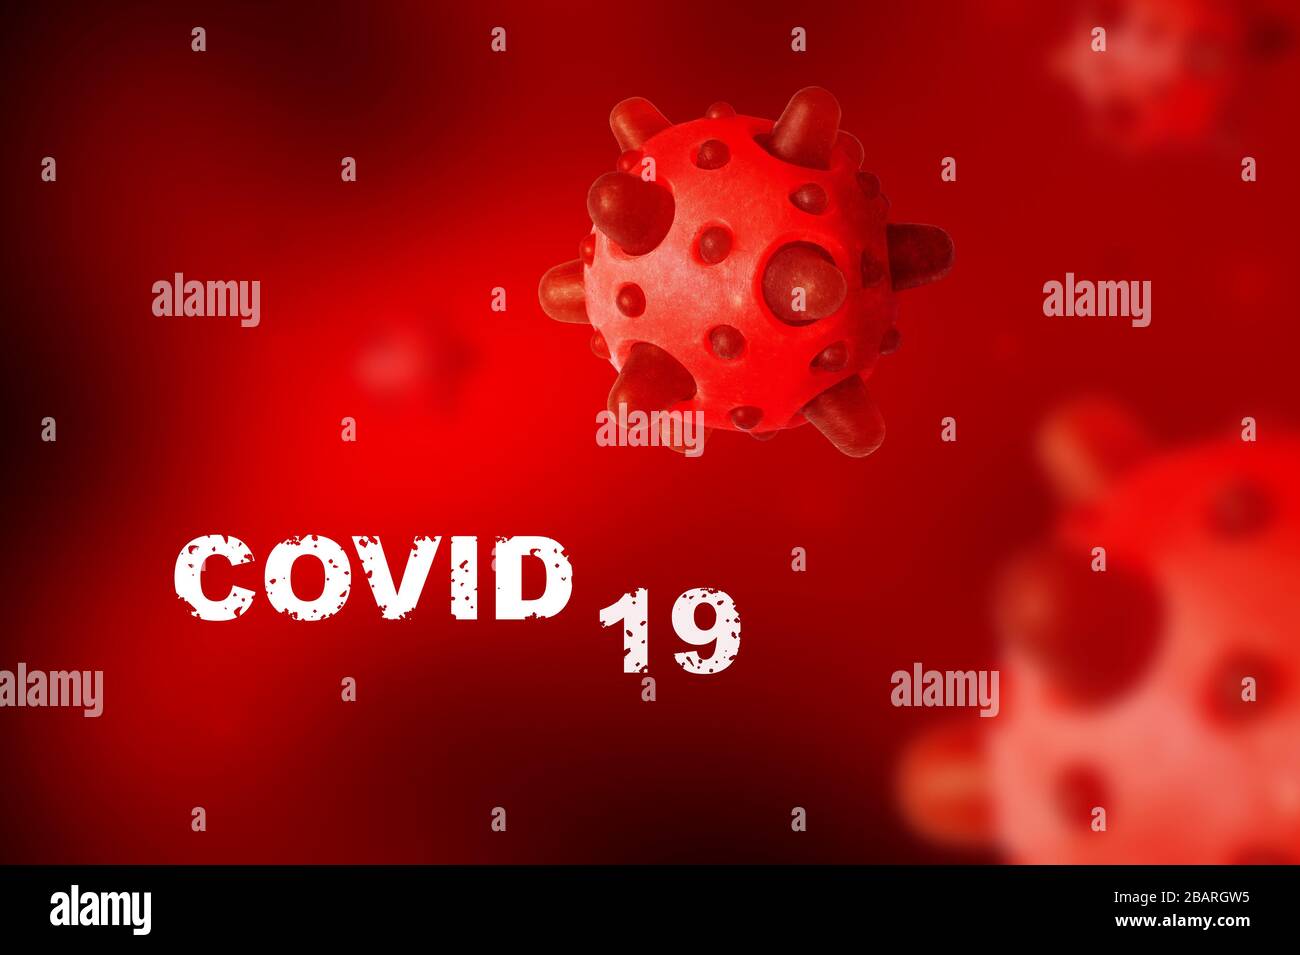 COVID-19-Coronavirus-Banner, mikroskopische Ansicht des SARS-COV-2-Corona-Virus im Blut, 3D-Abbildung. Untersuchung von Coronavirus-Ausbruch und Pandemie. Kon Stockfoto